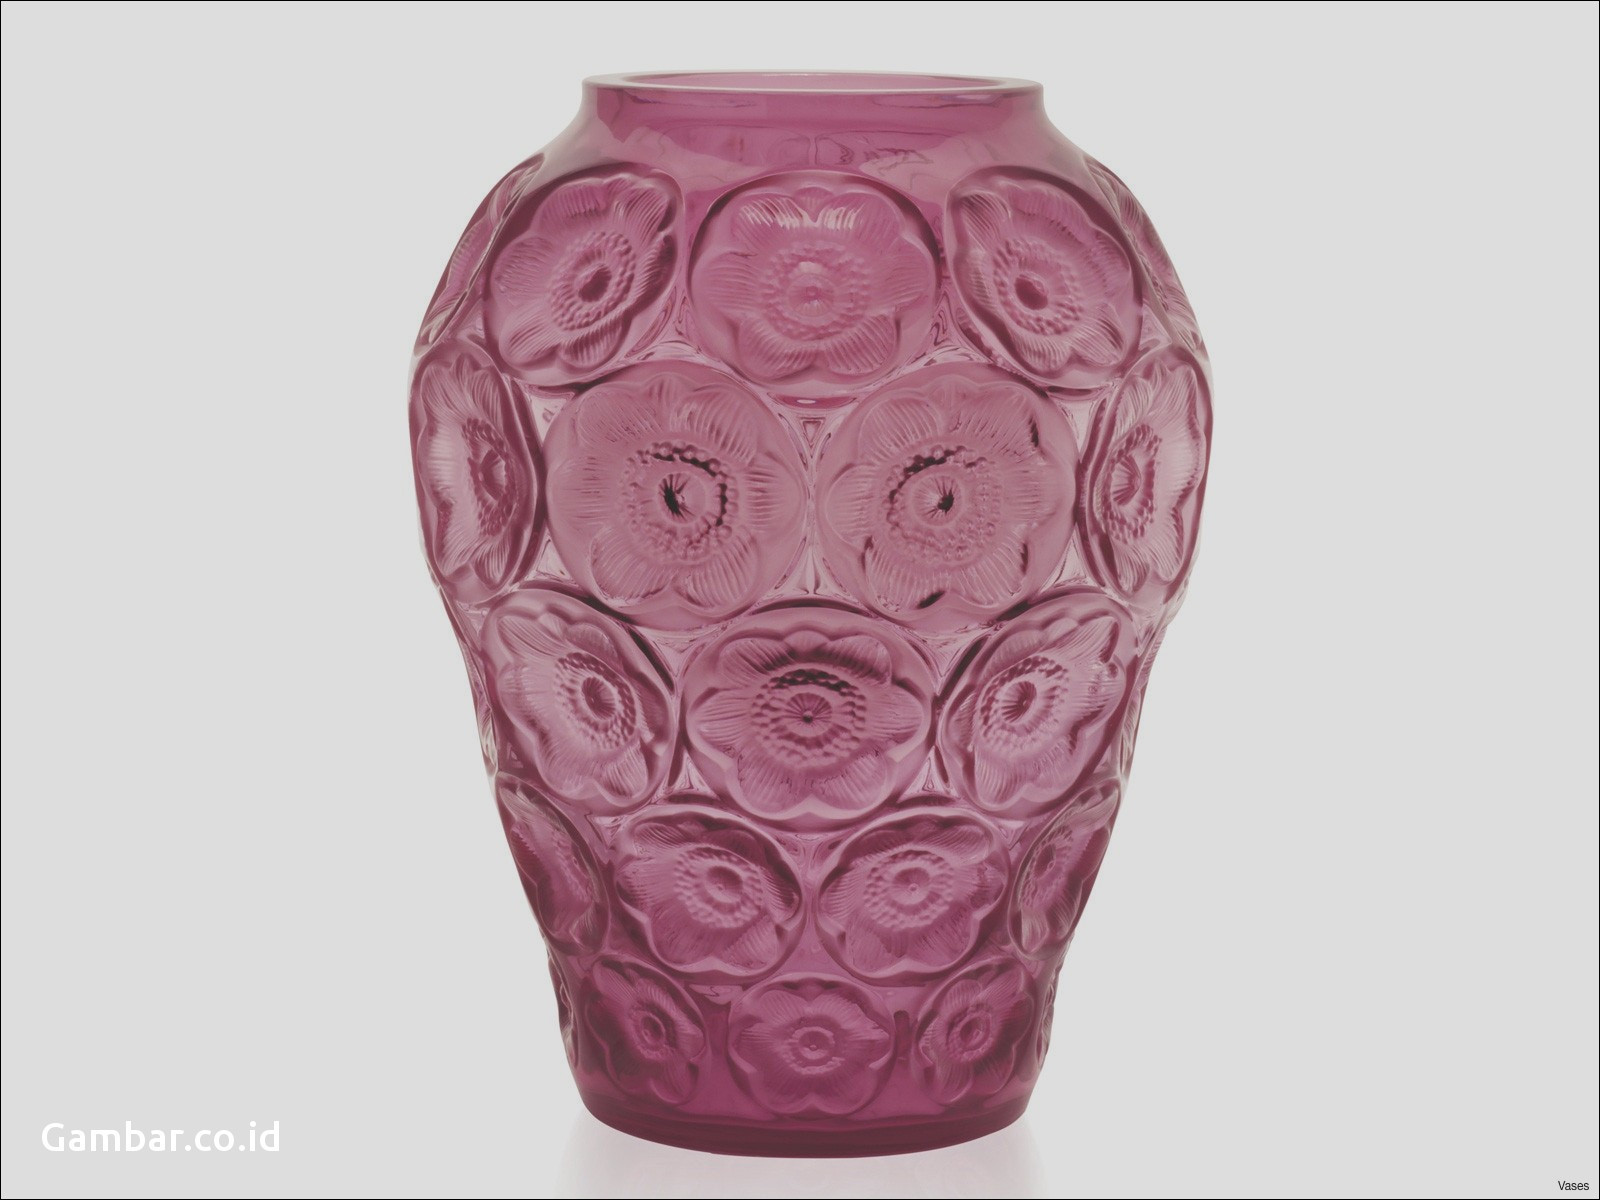 roseville blue vase of download gambar wallpaper pink fuschia vase vases vest roseville with regard to download image